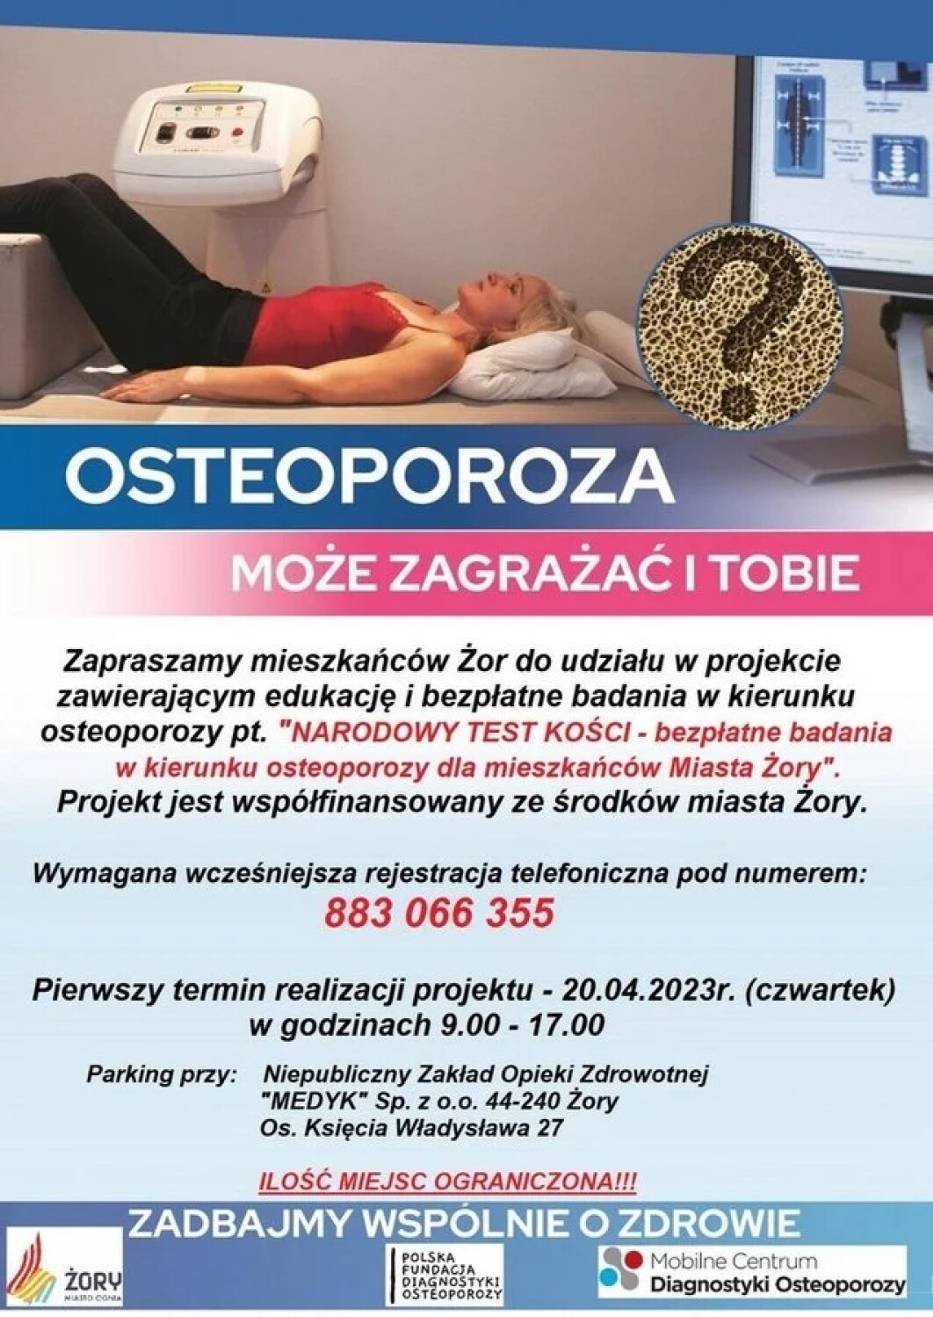 Bezpłatne badania pod katem osteoporozy w Żorach